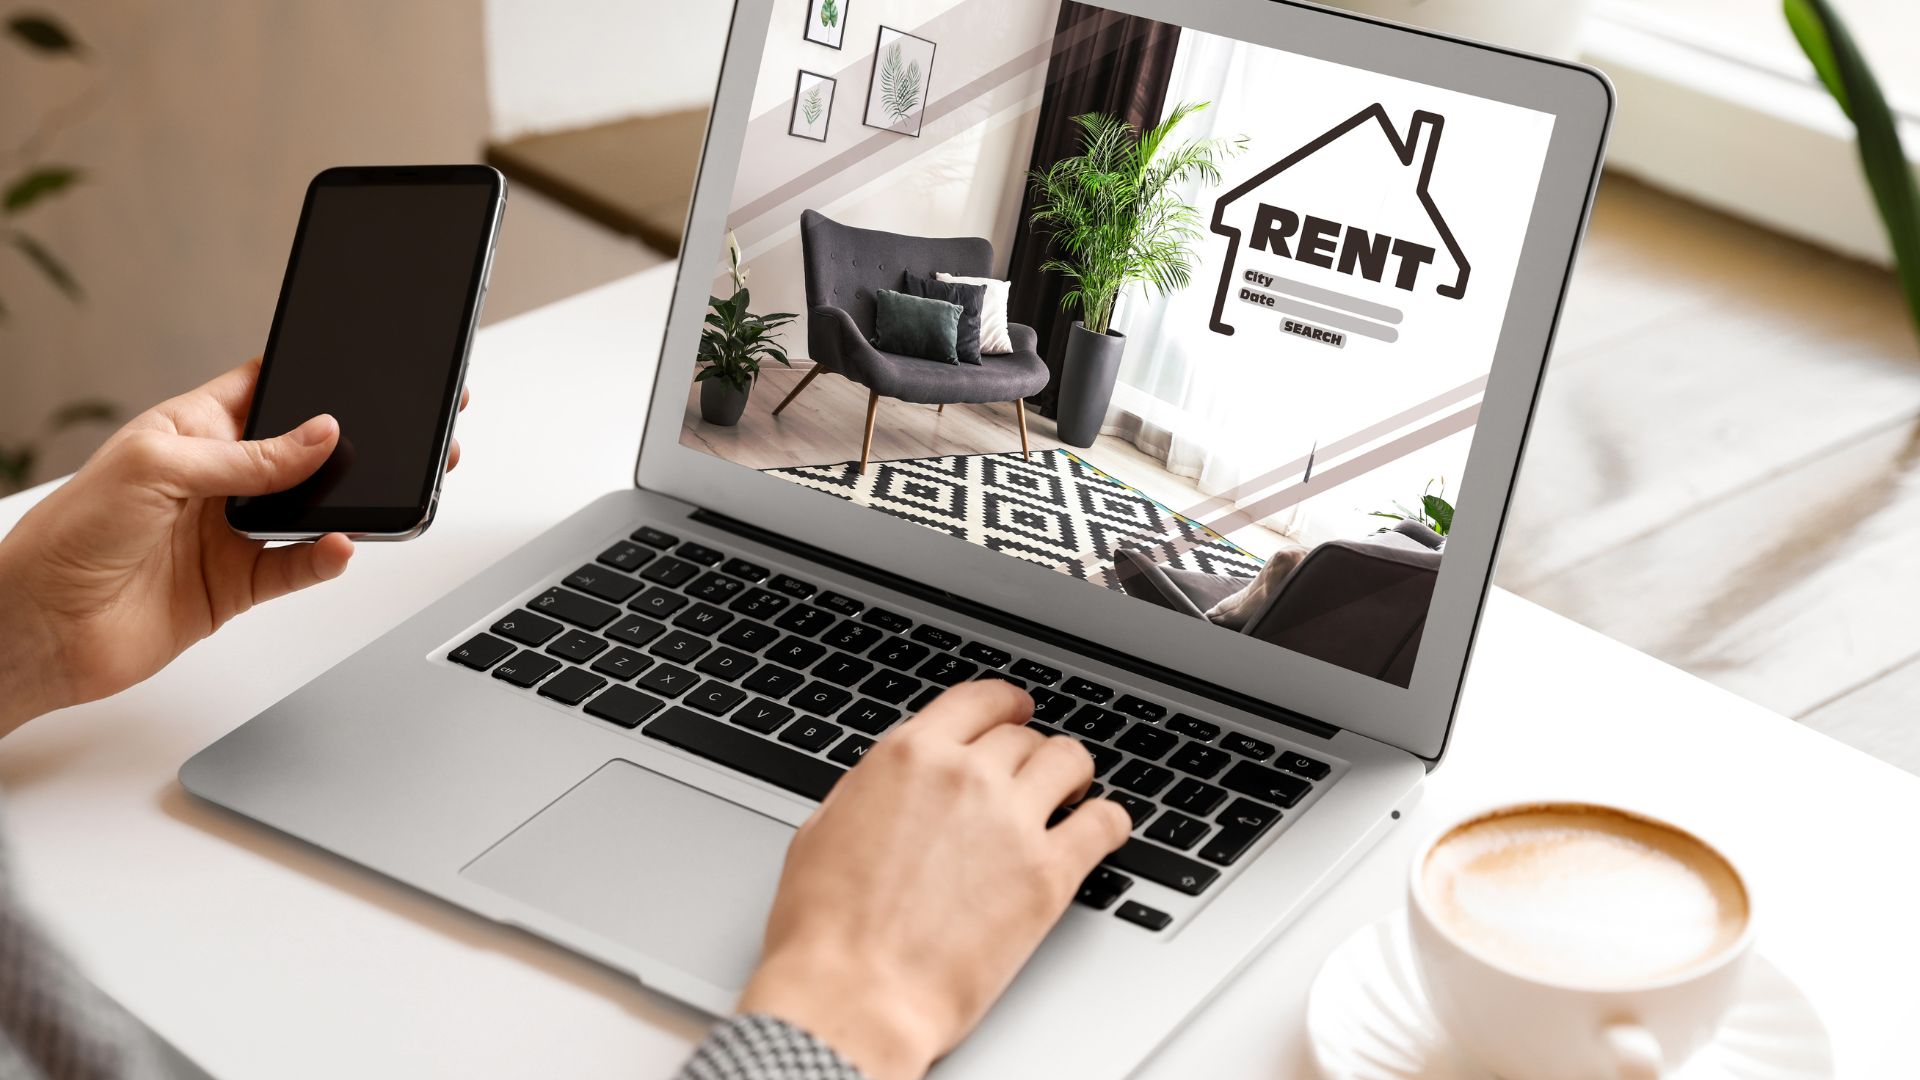 Best website for finding rental property